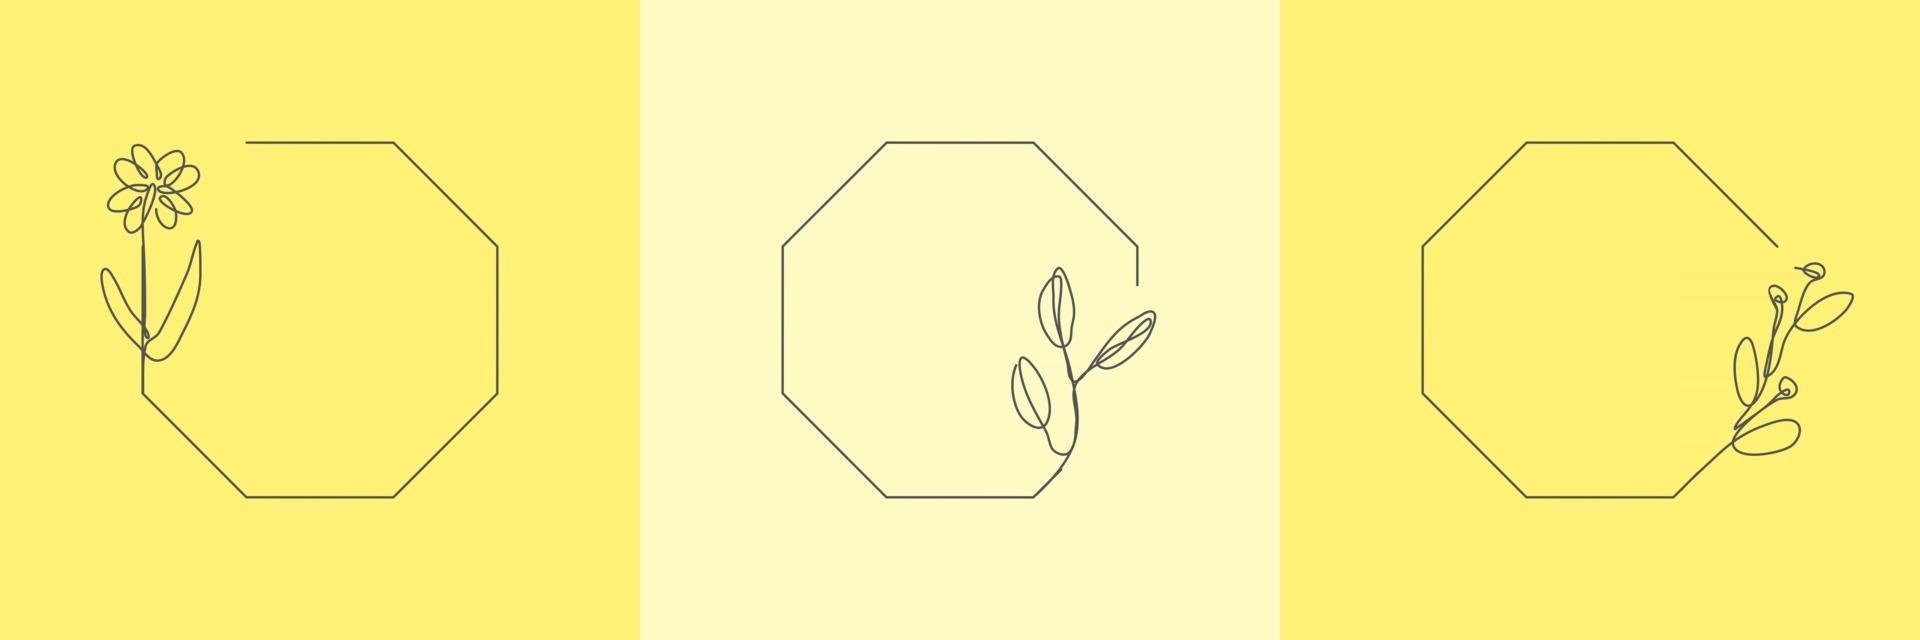 Establecer hierba orgánica floral dibujada a mano, hojas y flores con marco de octágono, elemento decorativo de hoja. Ilustración de vector de arte lineal para redes sociales, boda, invitación, logotipo, cosmética